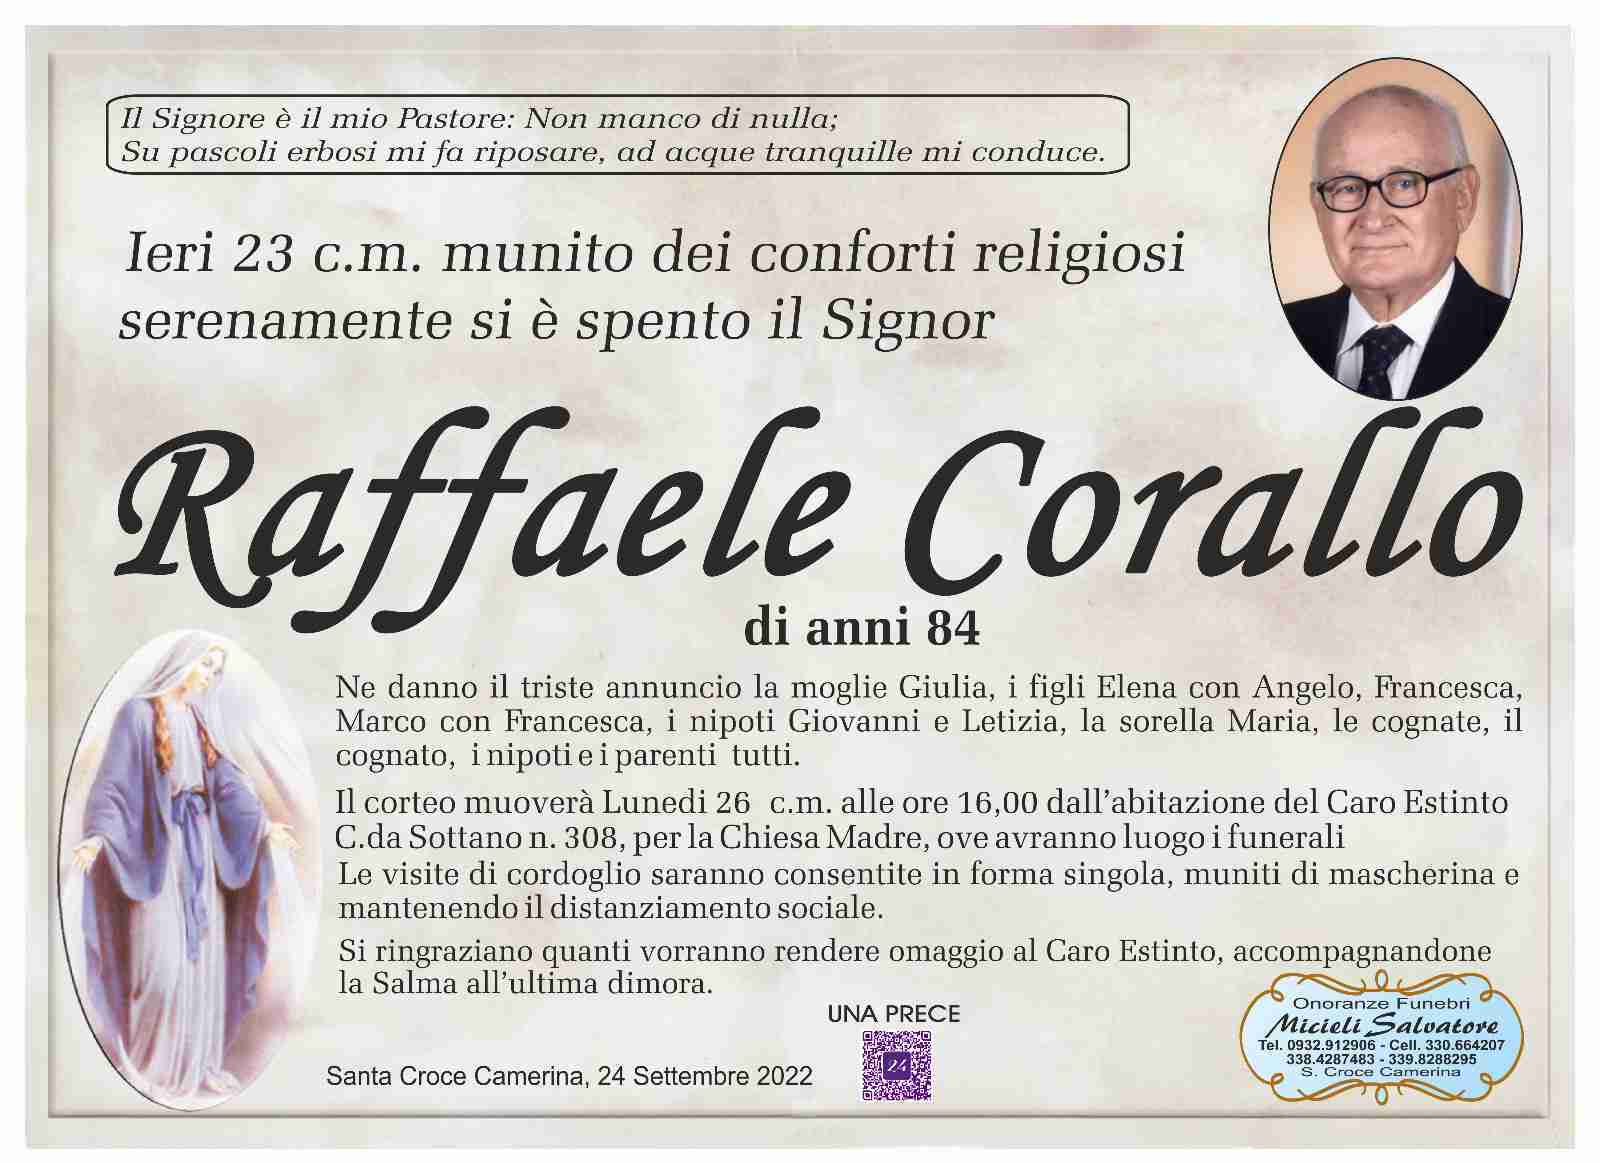 Raffaele Corallo